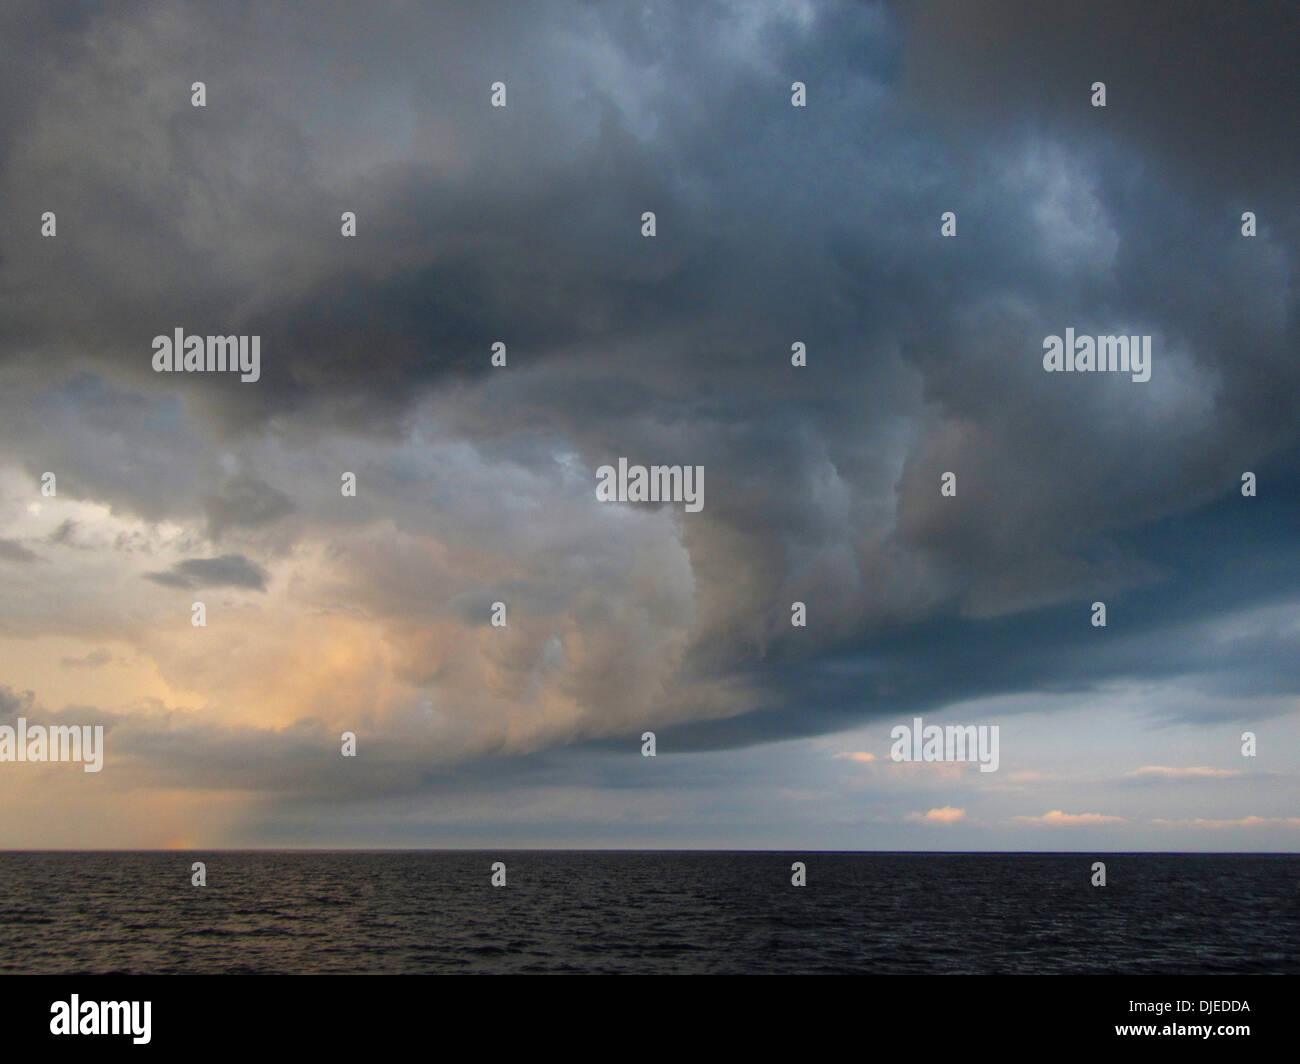 Ein stürmische aussehender Sweep von Wolken bildet eine Schlechtwetterfront über dem Ozean. Stockfoto